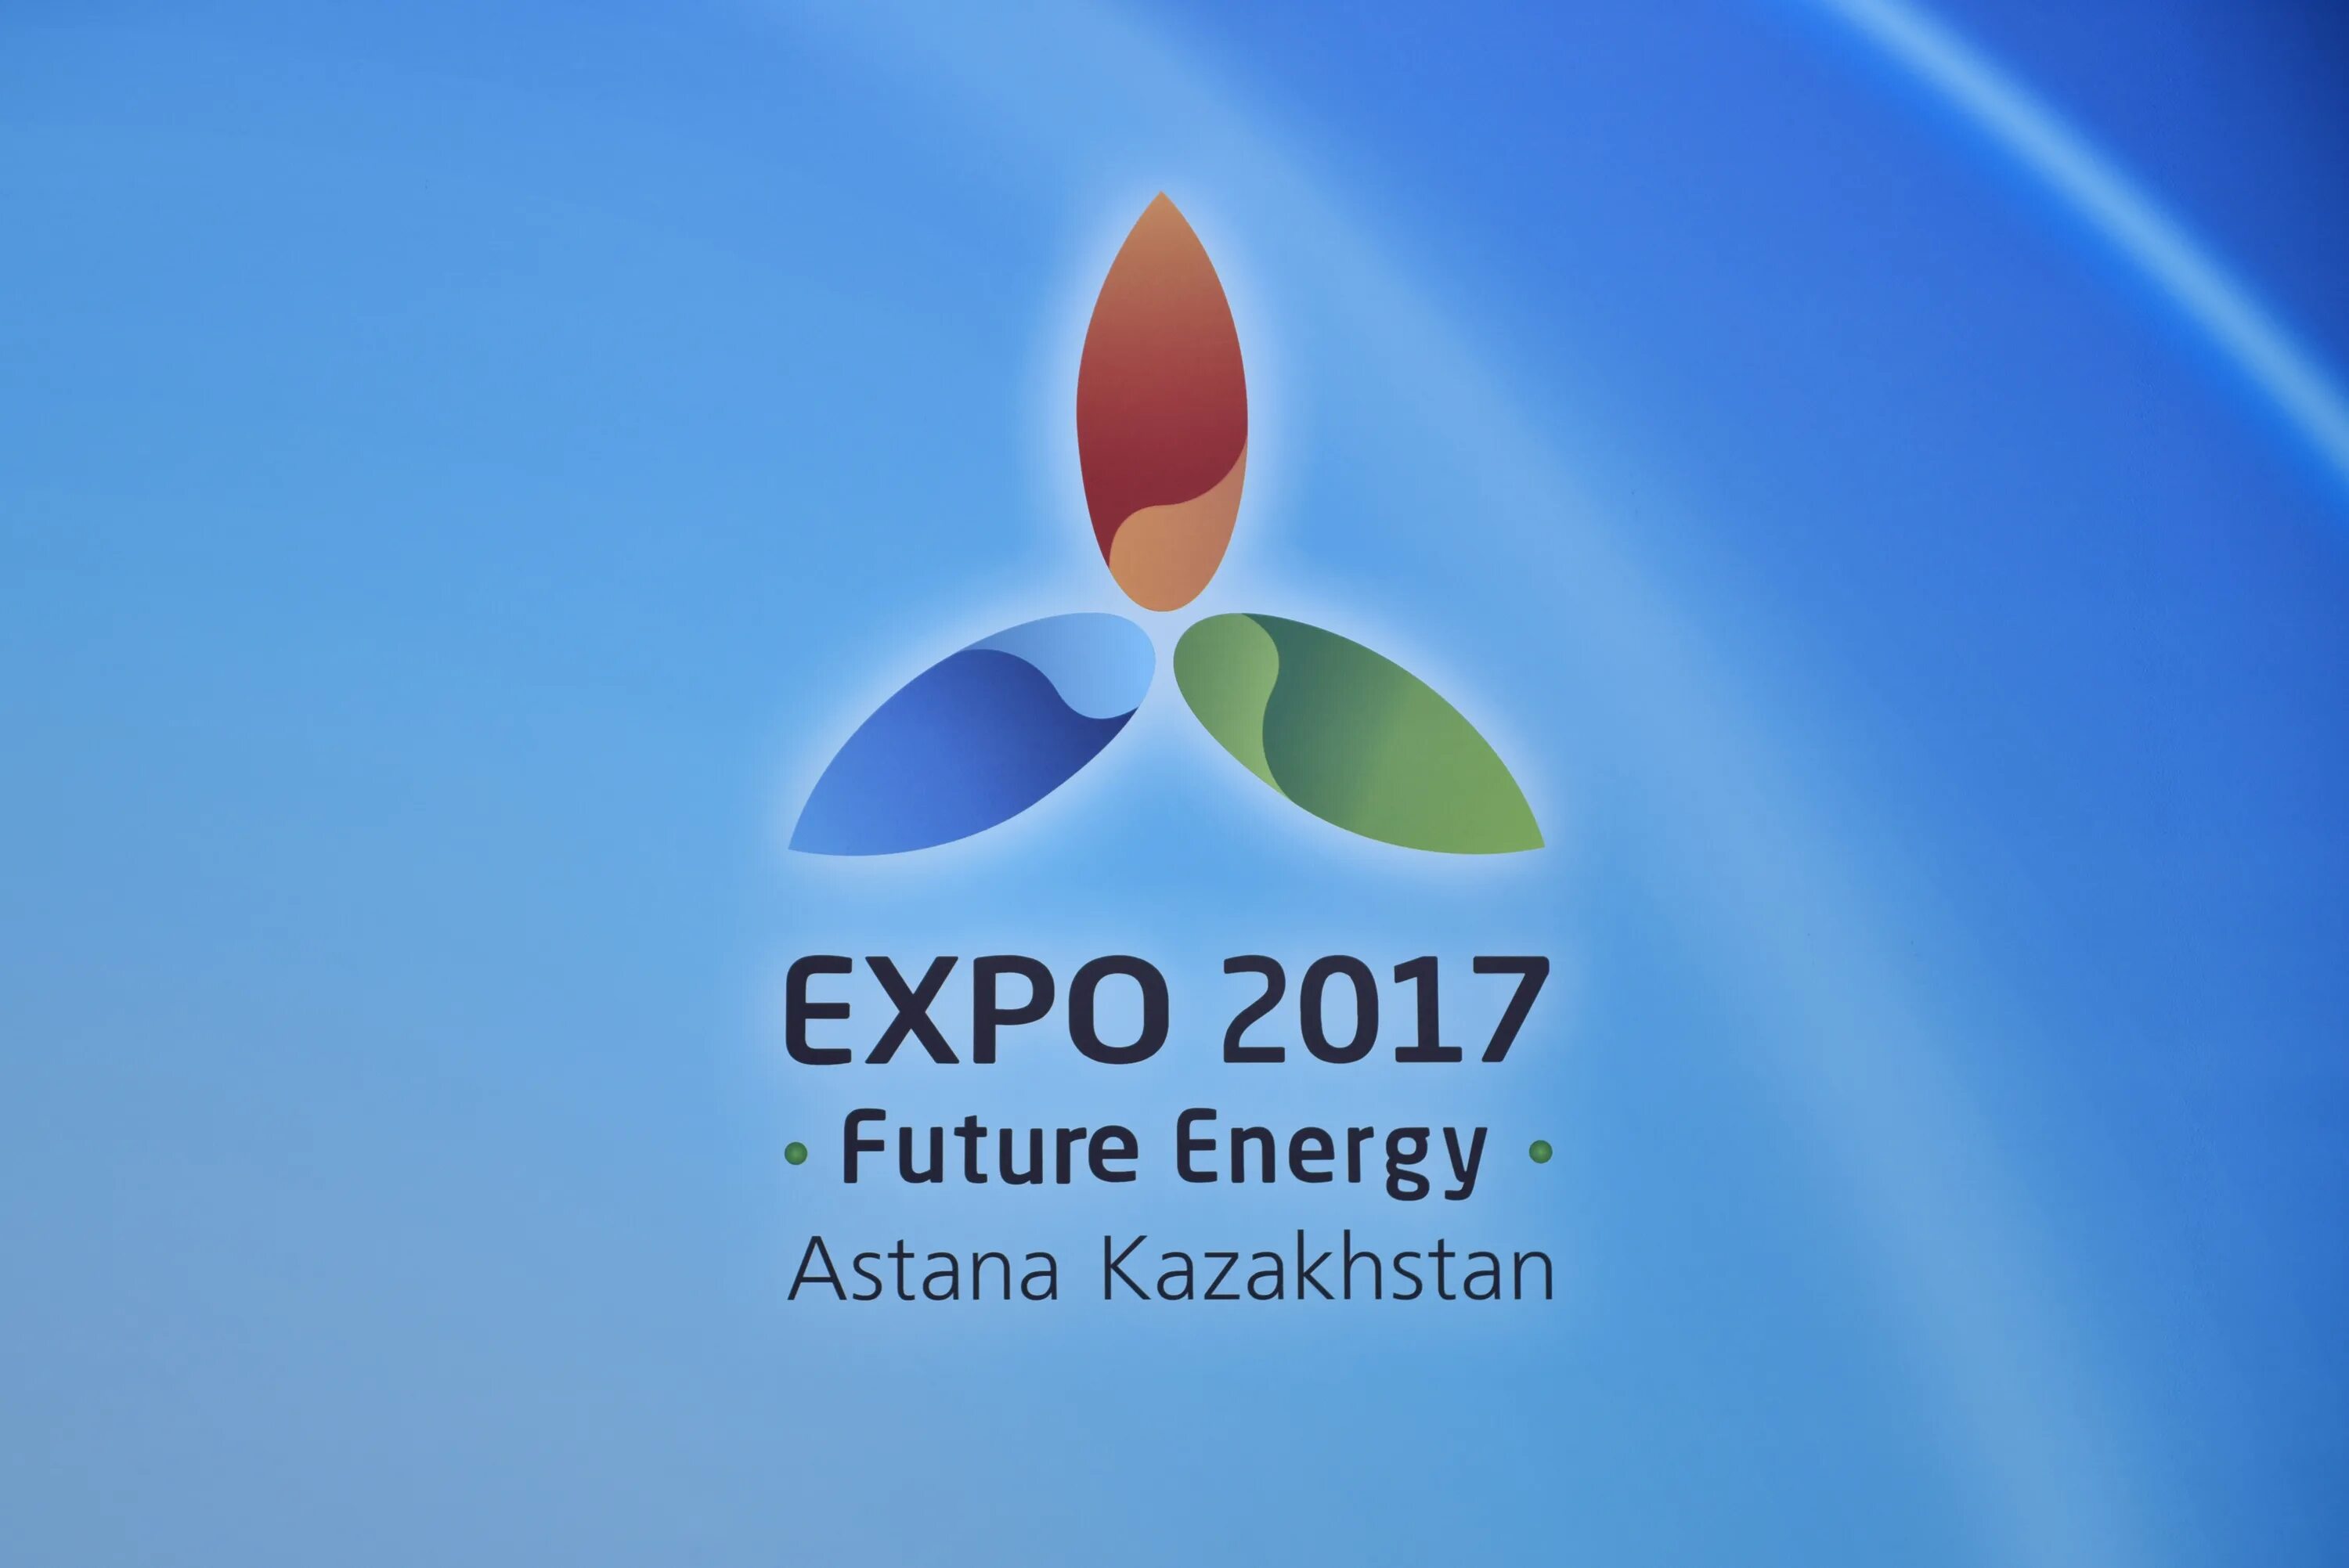 Expo 2017 логотип. Экспо 2017 Казахстан эмблема. Казахстан Экспо 2017 Астана. Экспо 2017 энергия будущего.